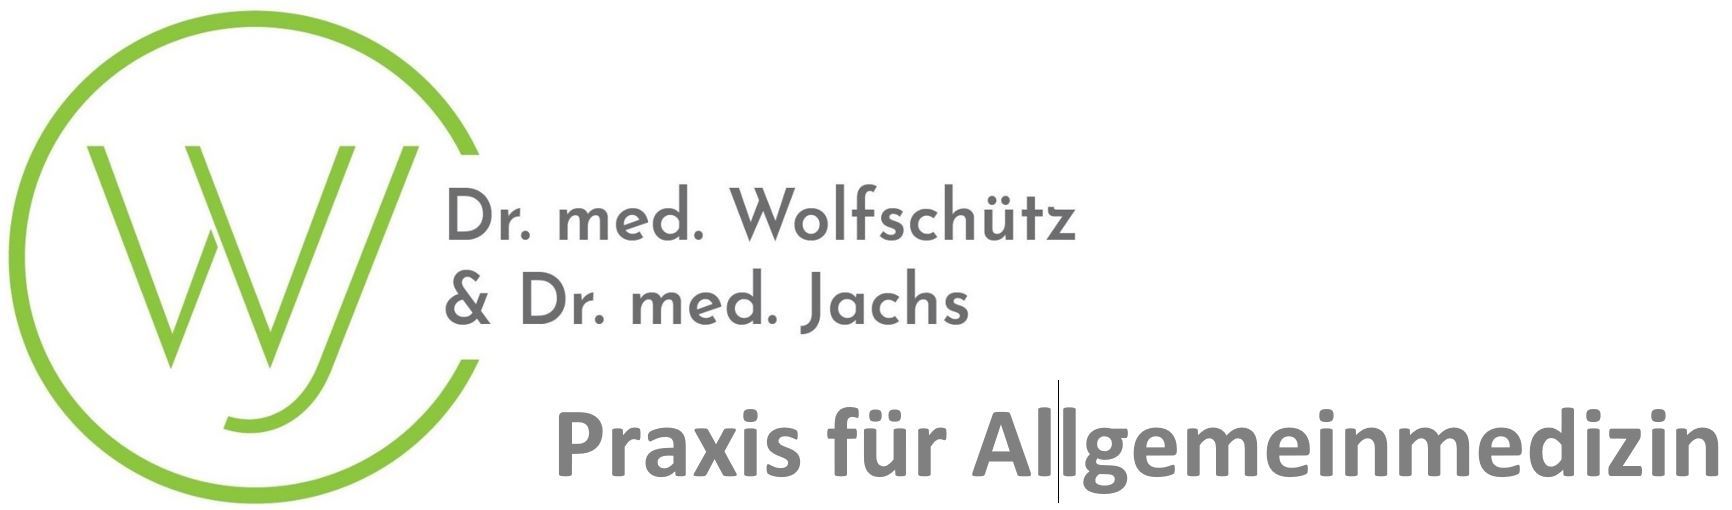 Dr. Wolfschütz & Dr. Jachs